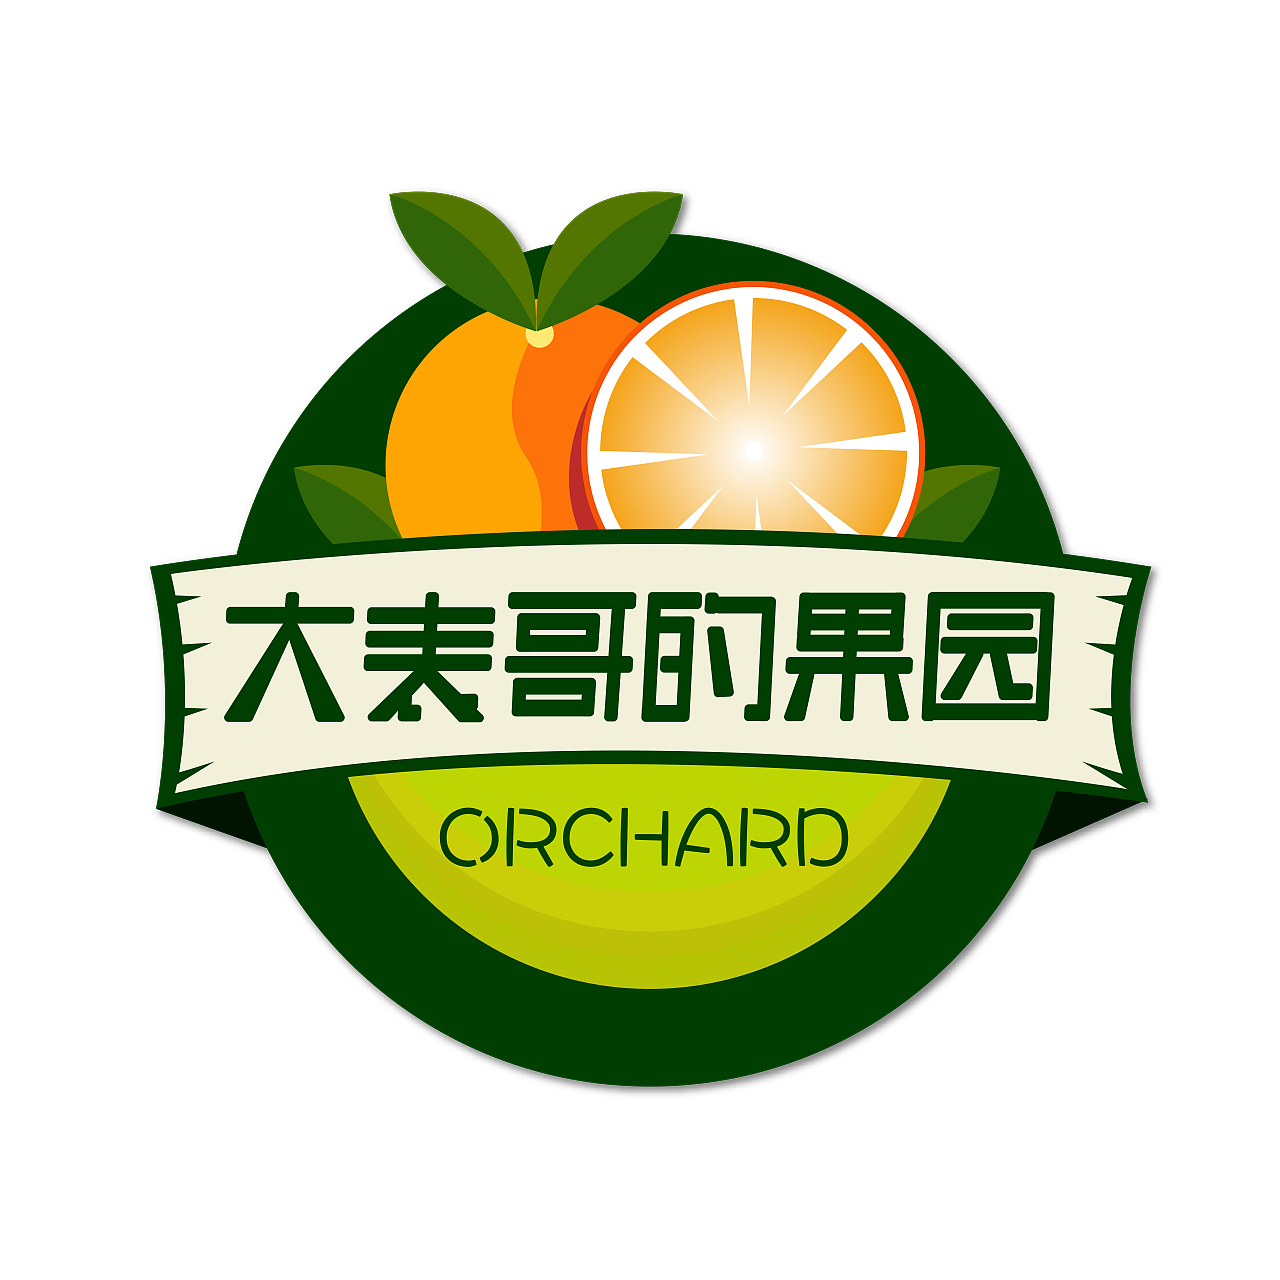 今天给一个水果上做了个logo,logo设计500元起